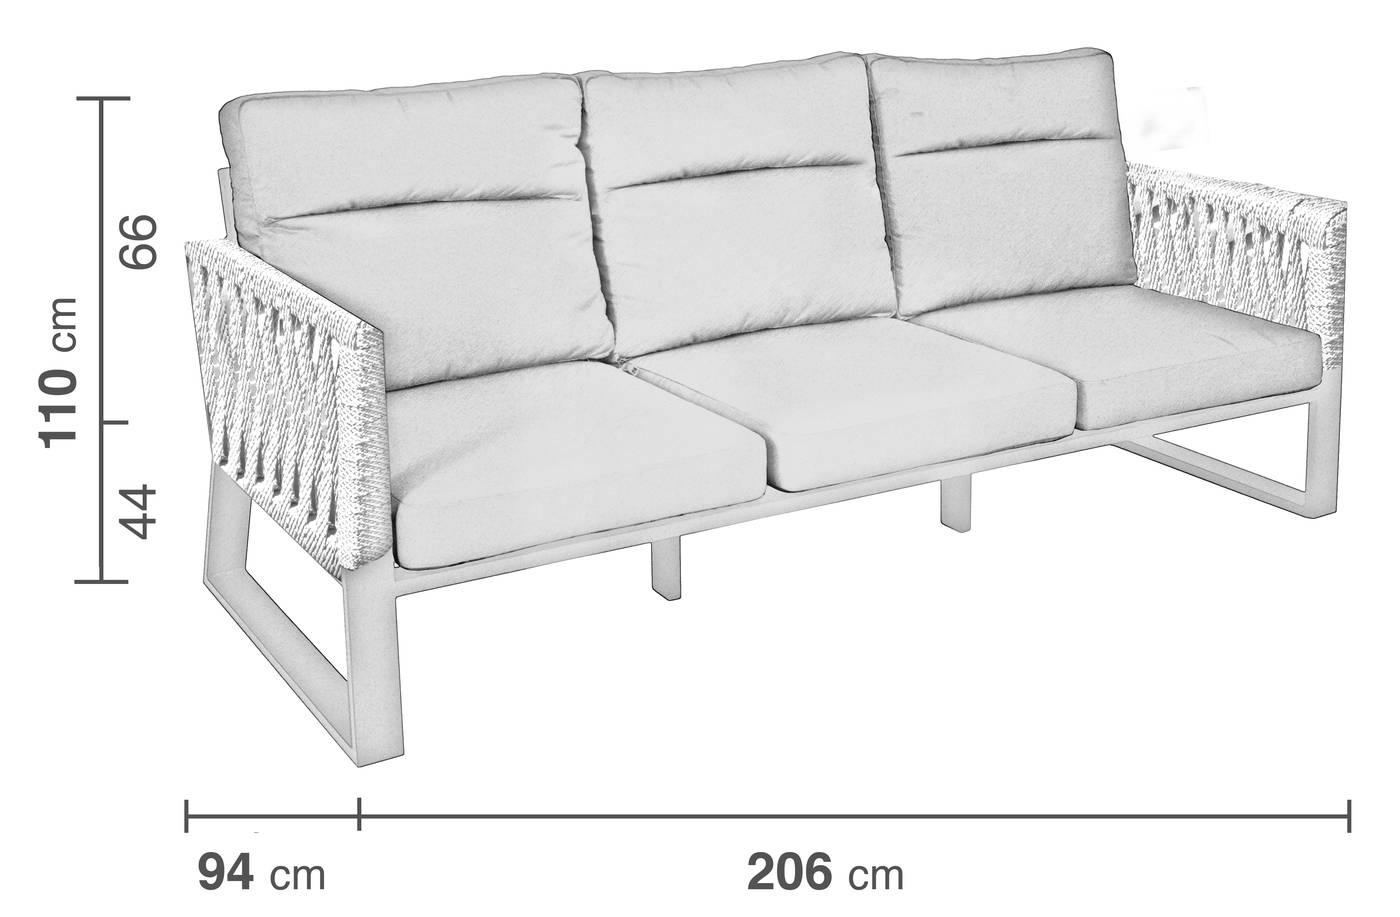 Sofá Cuerda Bolonia-35 - Sofá relax 3 plazas lujo, con respaldos reclinables. Fabricado de aluminio y cuerda en color blanco, gris, marrón o champagne.